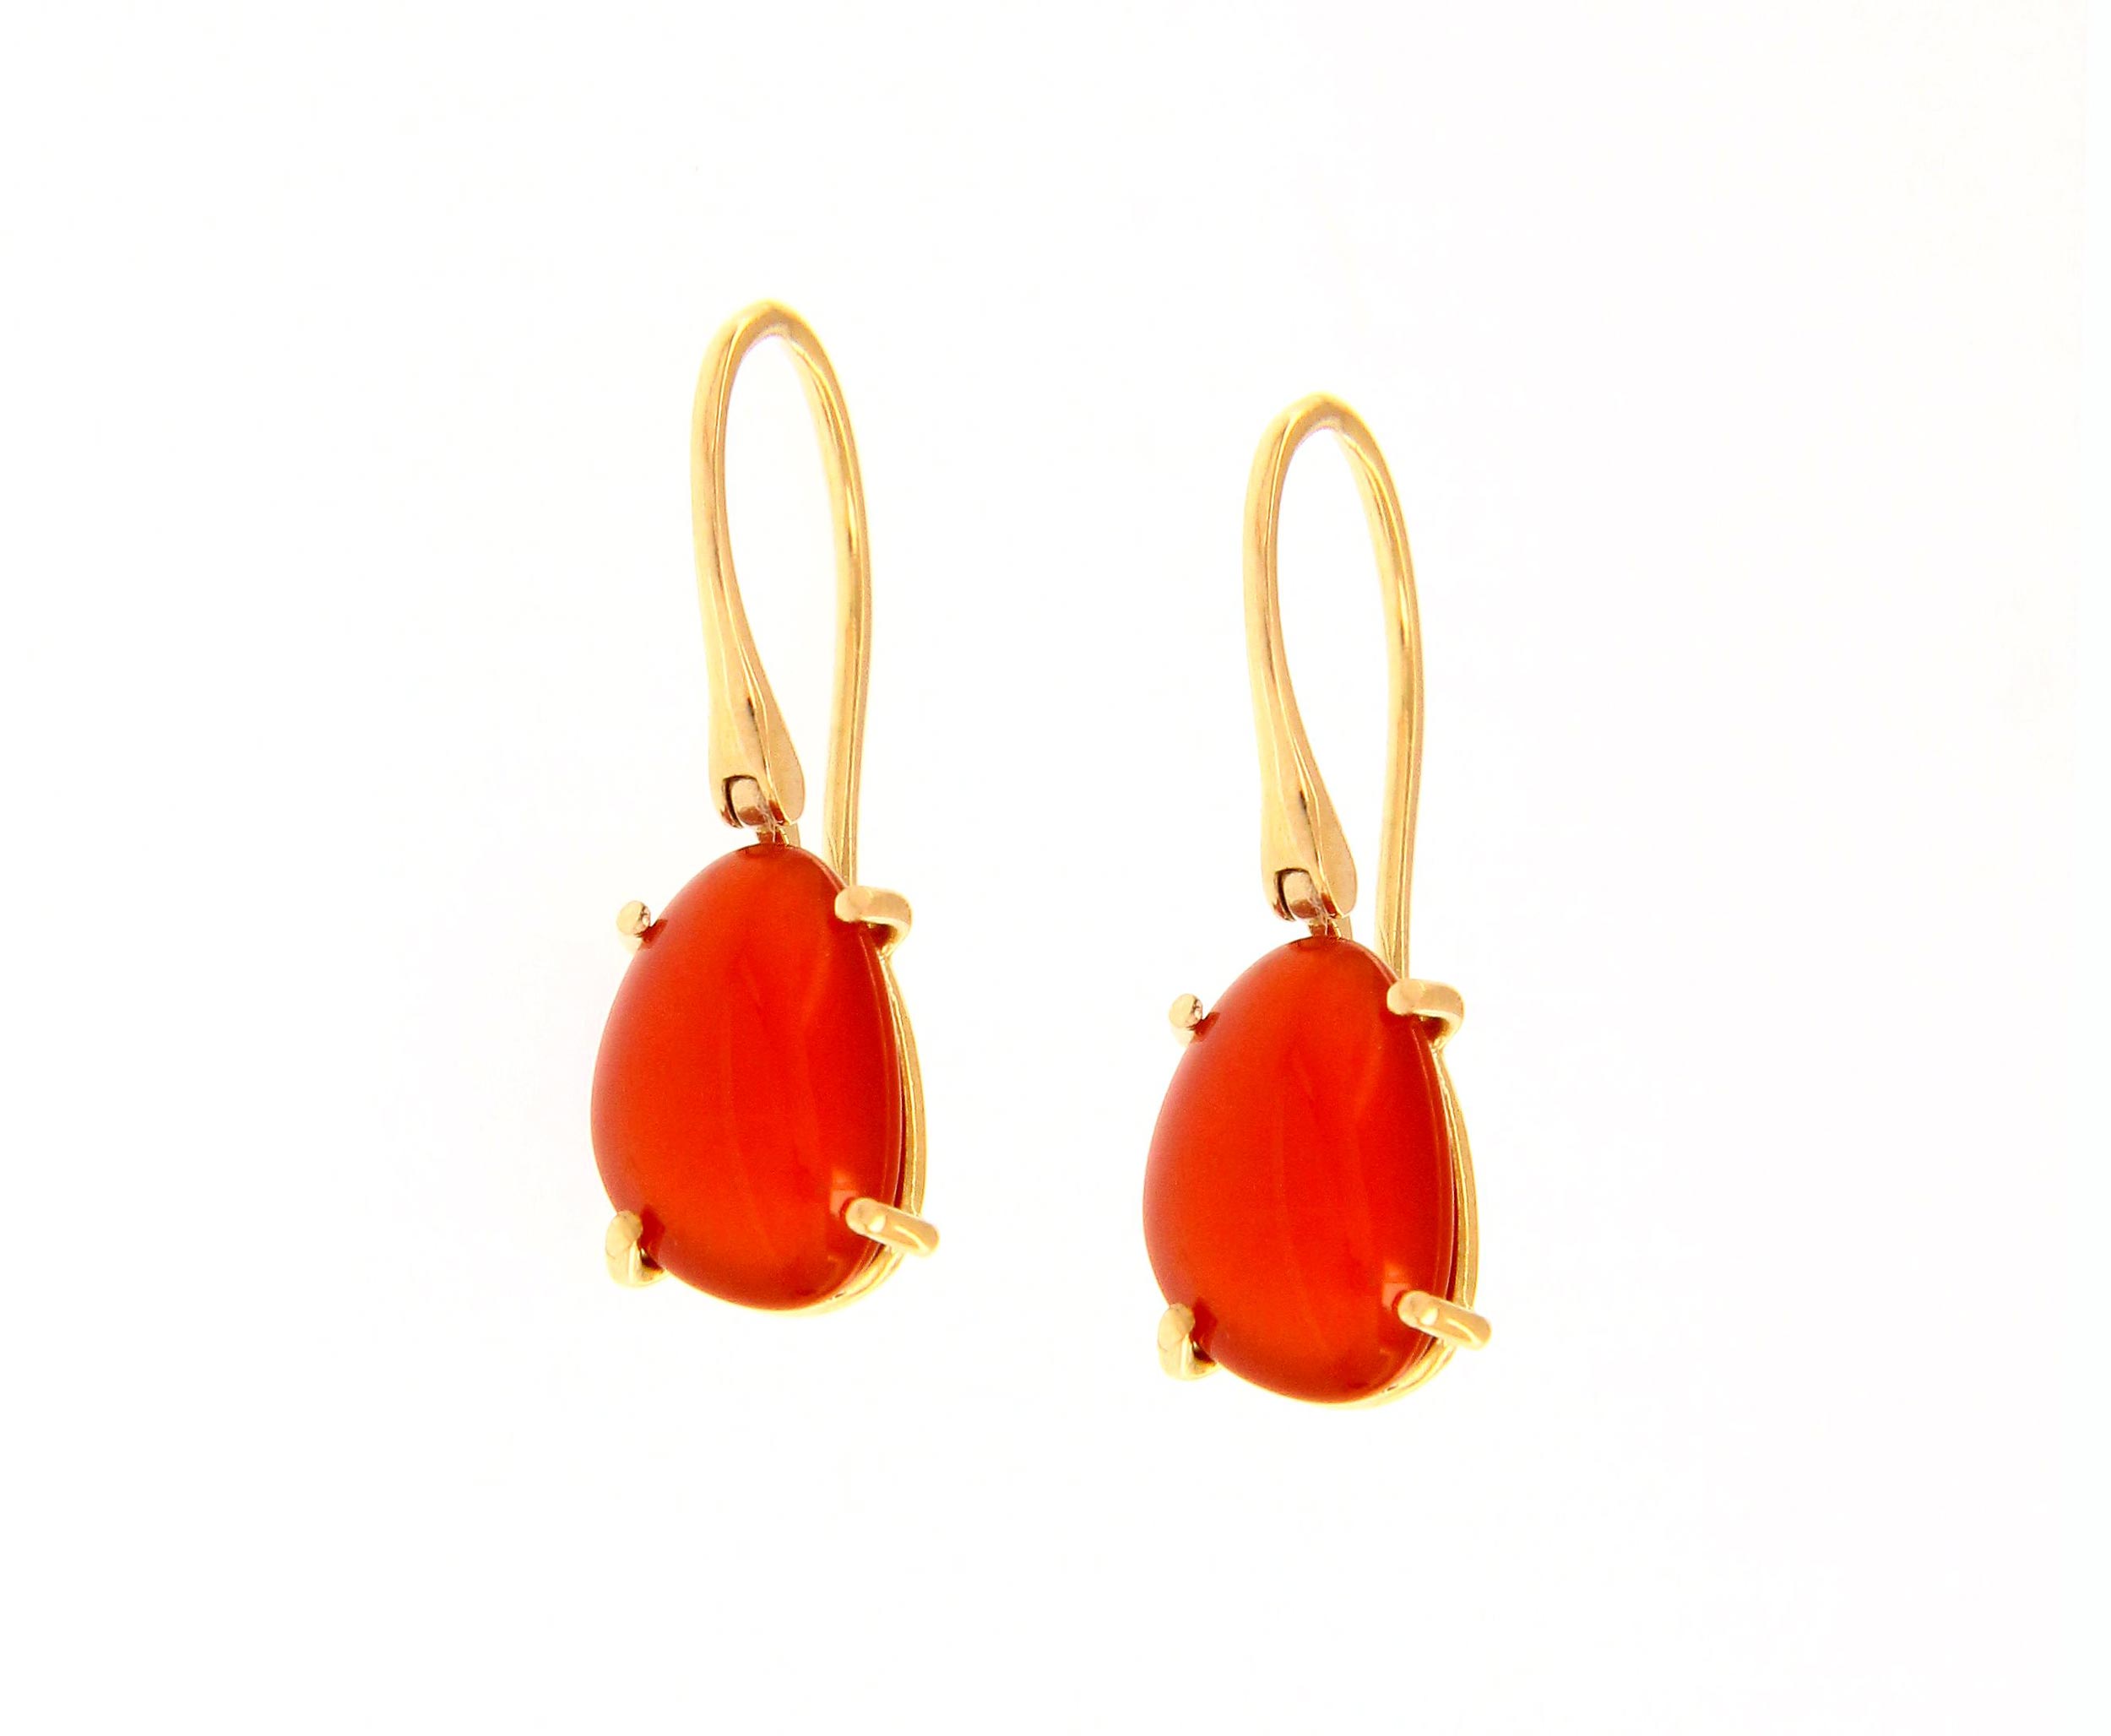 pendientes mujer oro cornalinas rojas - aretes mujer piedras rojas - gold earrings to buy online - joyeria marga mira